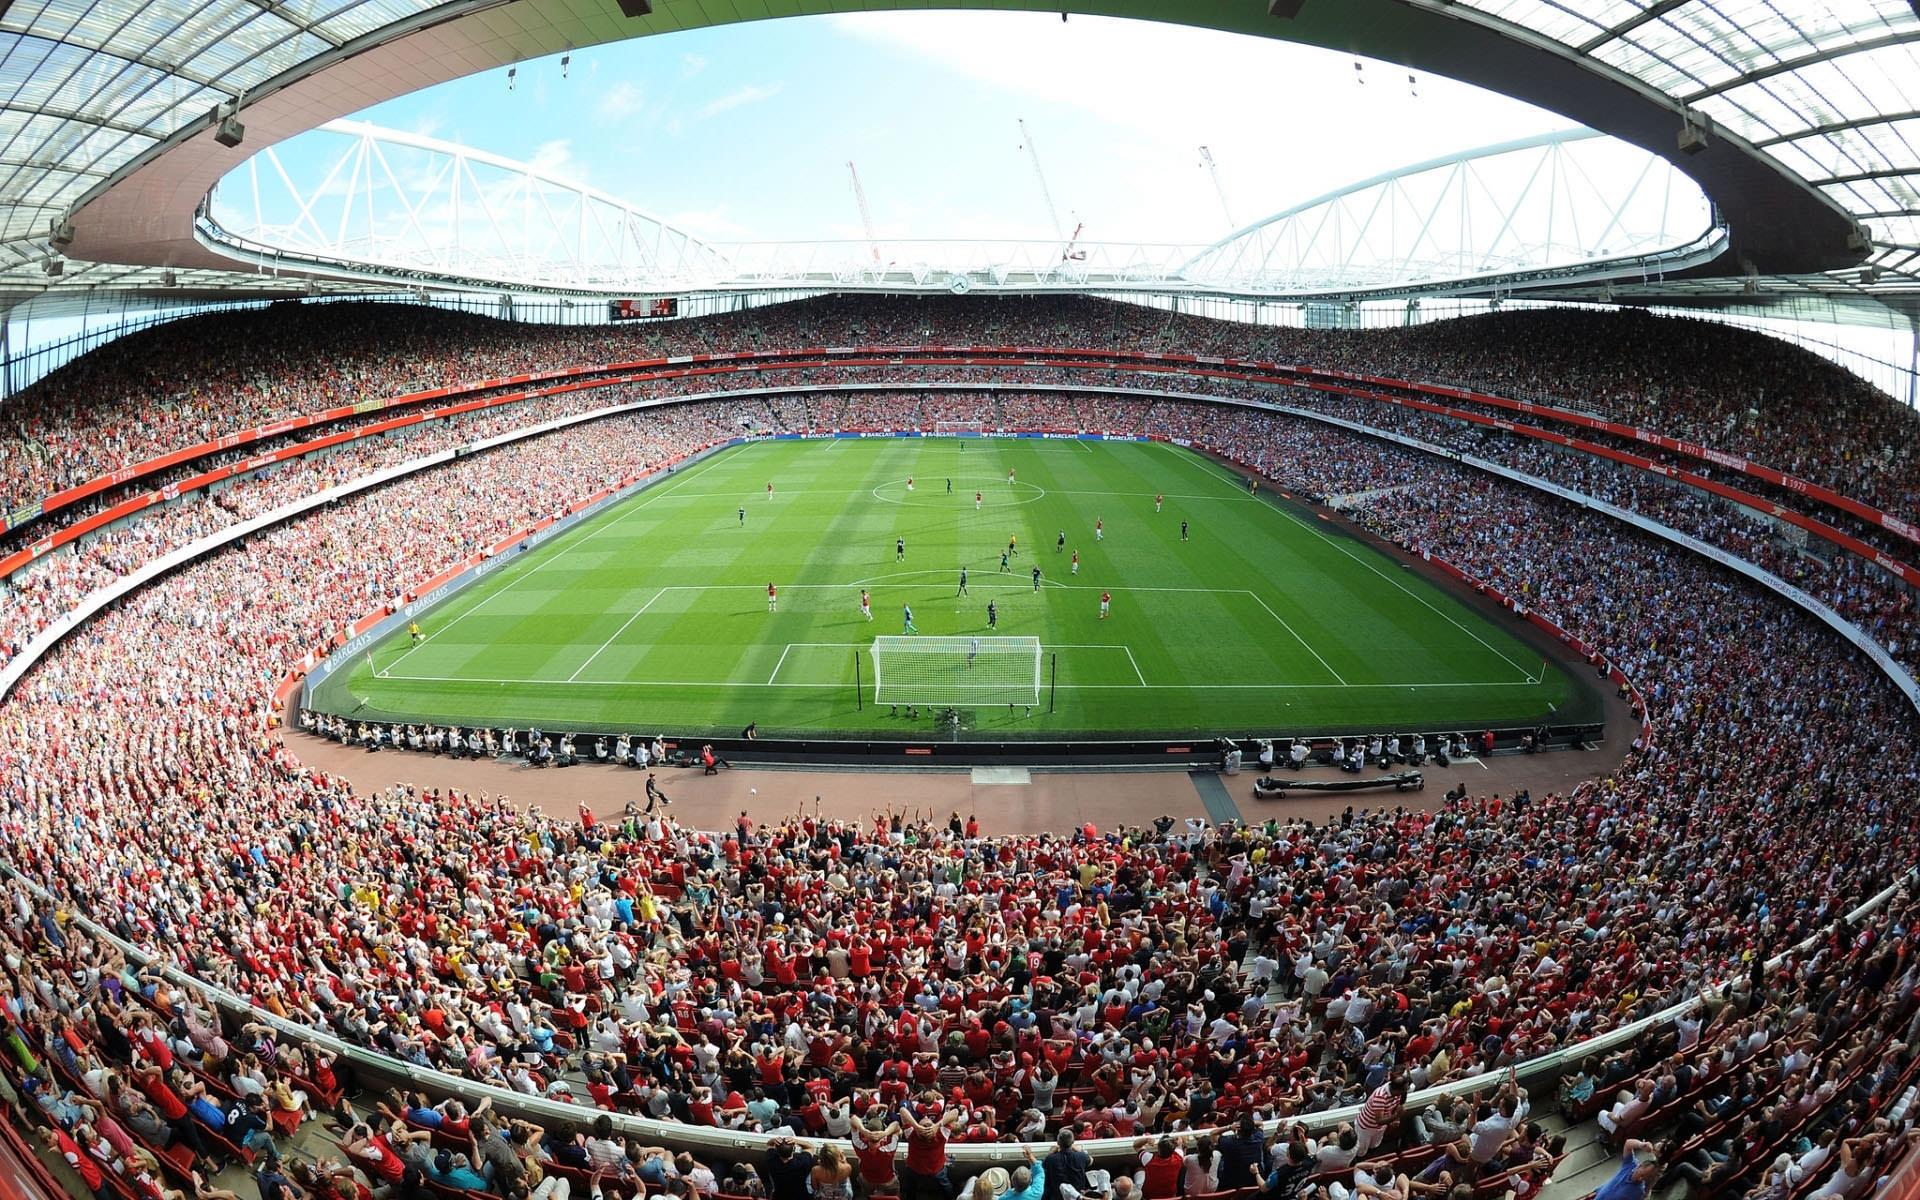 Visit The Emirates Stadium, The Headquarters of Arsenal FC